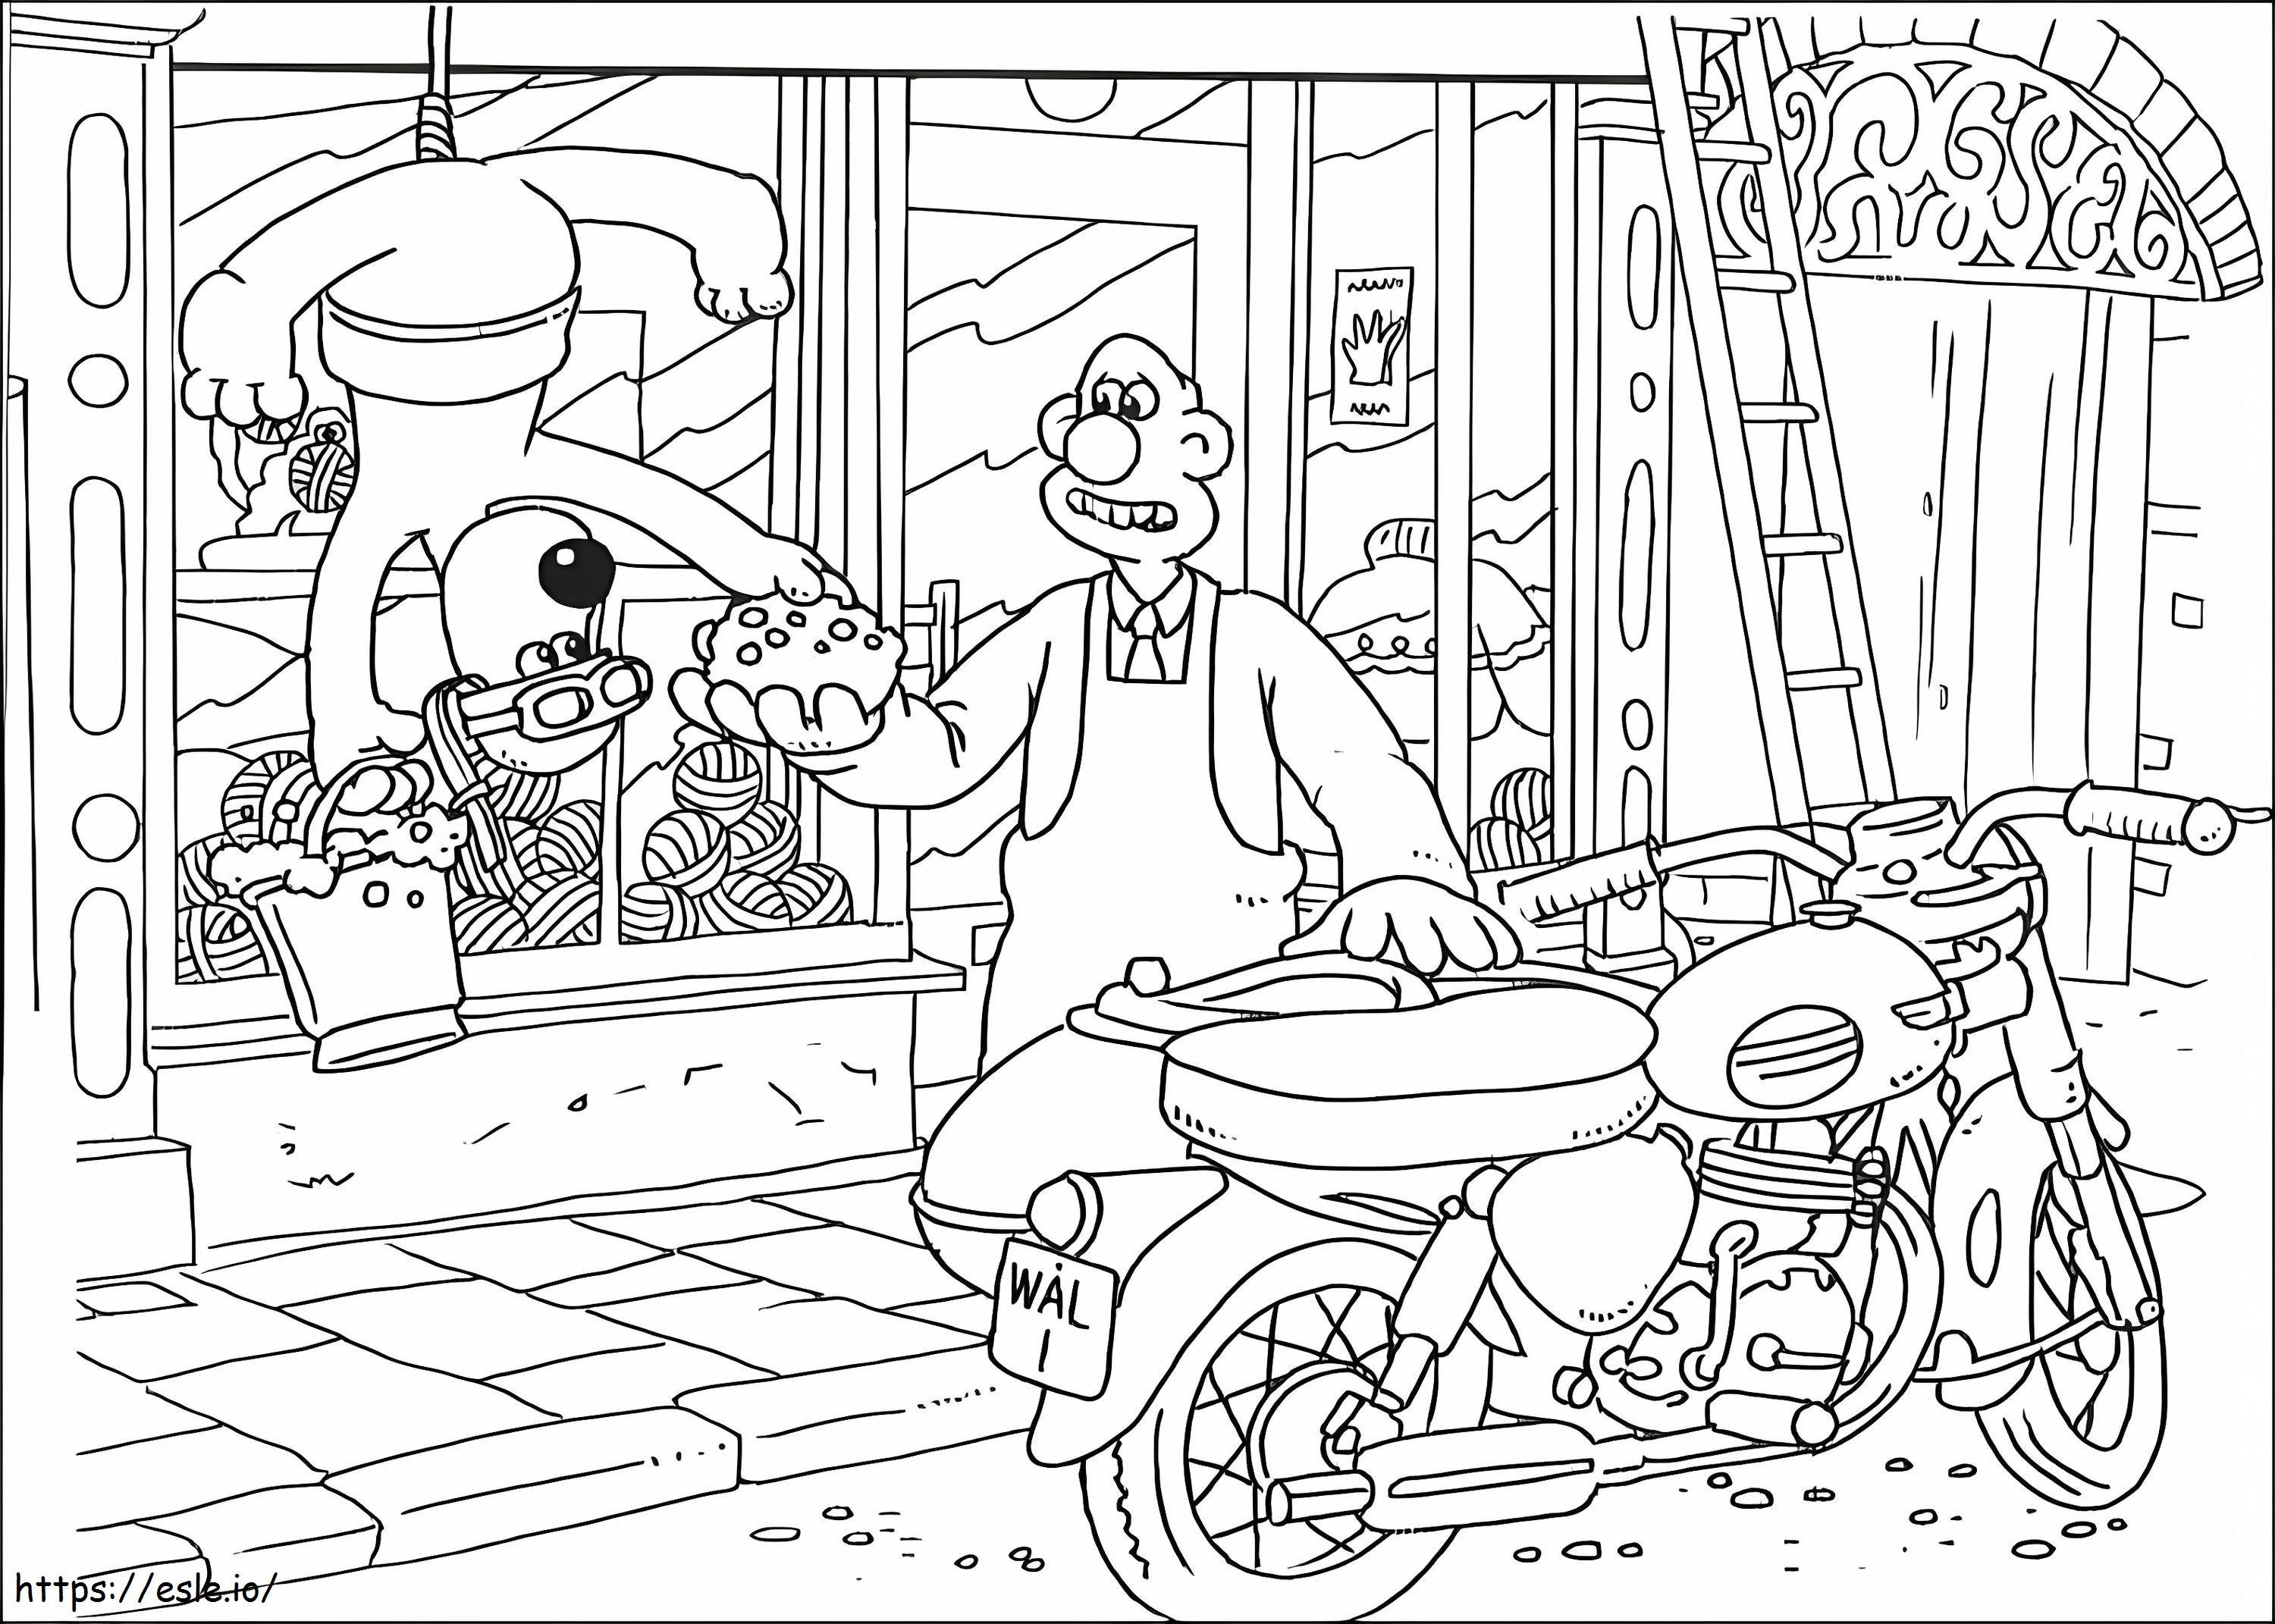 Wallace i Gromit pracują kolorowanka